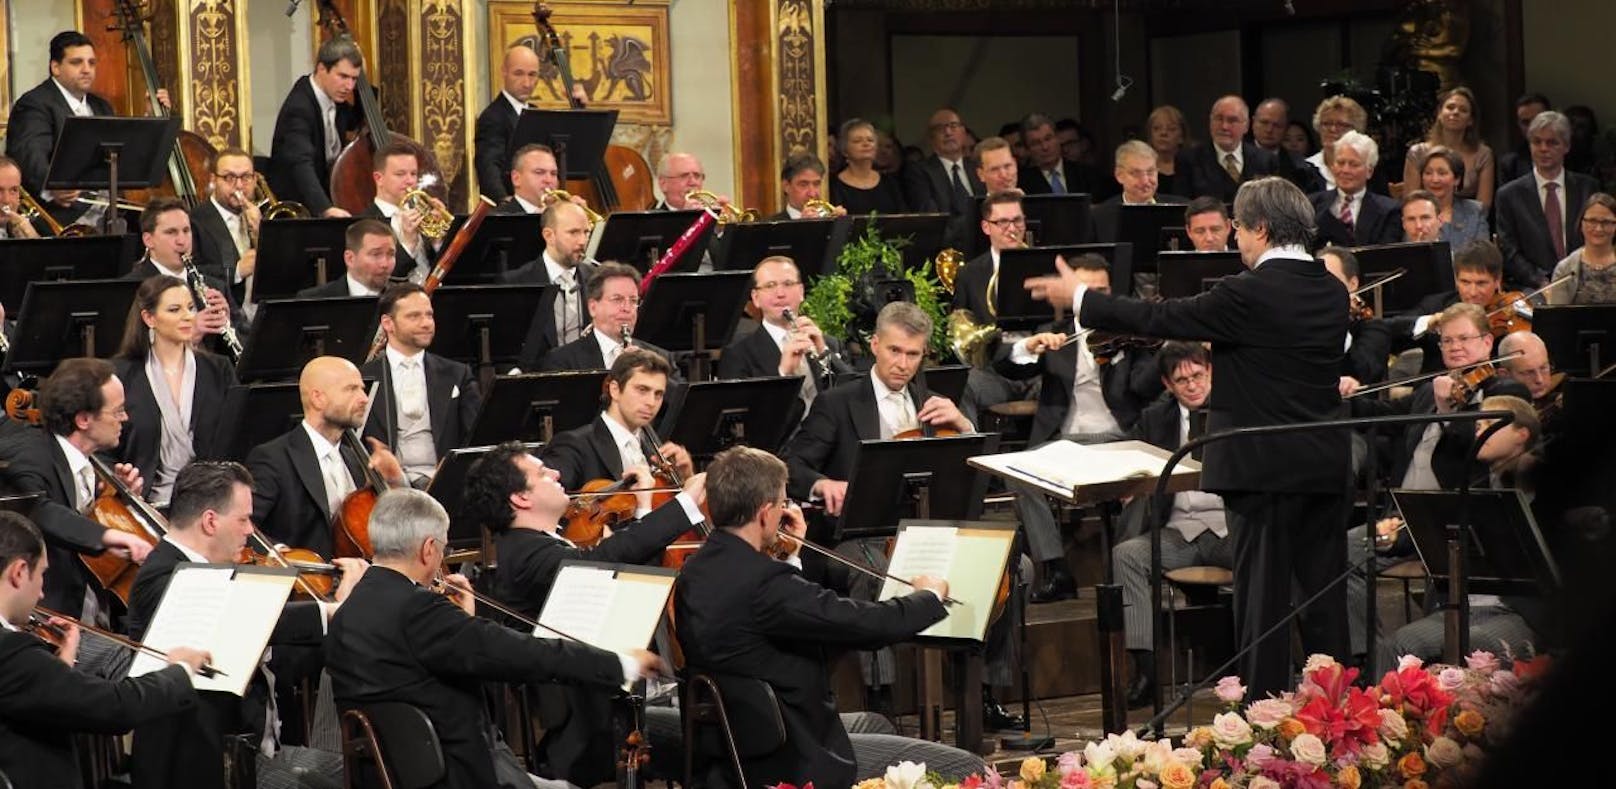 Die Wiener Philharmoniker beim weltberühmten Neujahrskonzert